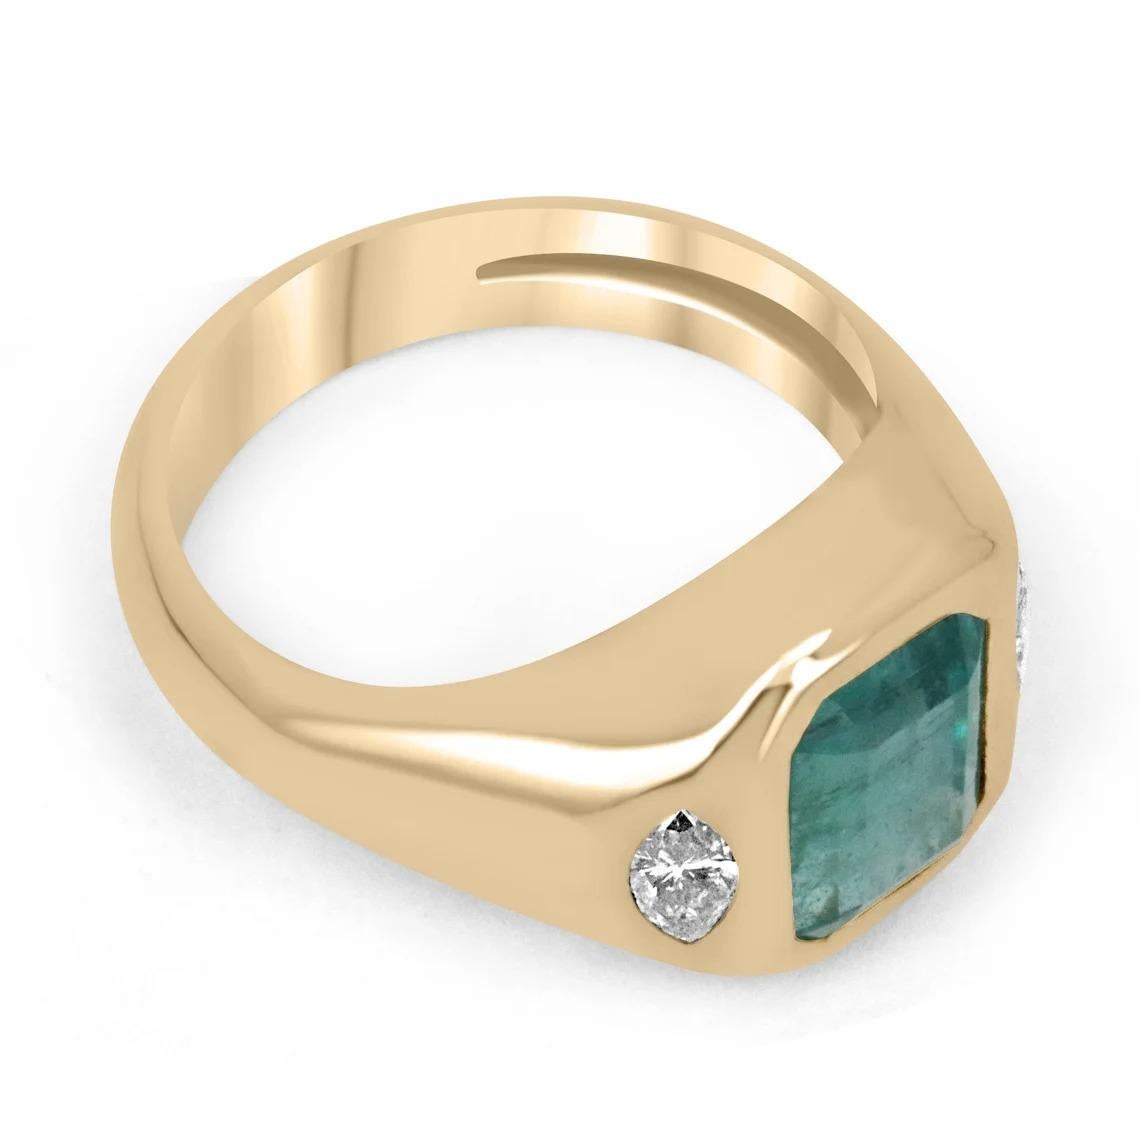 Ein bemerkenswerter dreisteiniger Smaragd- und Diamantring für die rechte Hand/Verlobung. Dieses außergewöhnliche Einzelstück enthält einen wunderschönen Smaragd mit Smaragdschliff aus Sambia. Der Edelstein hat eine atemberaubende tiefgrüne Farbe